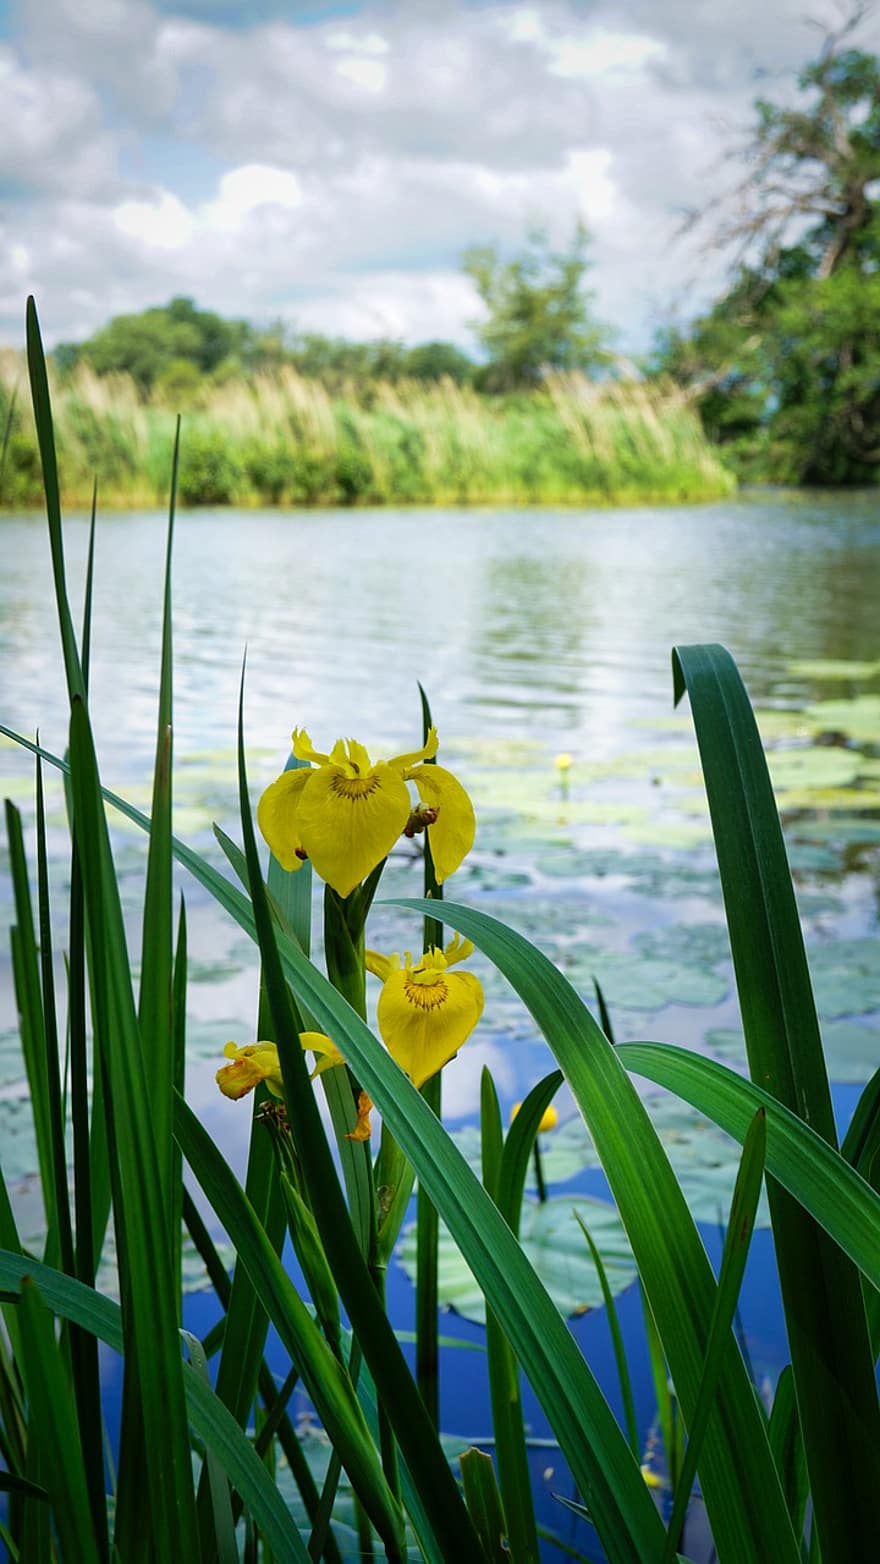 iris groc, estany, flors, flors grogues, naturalesa, llac, flor, color verd, estiu, planta, groc